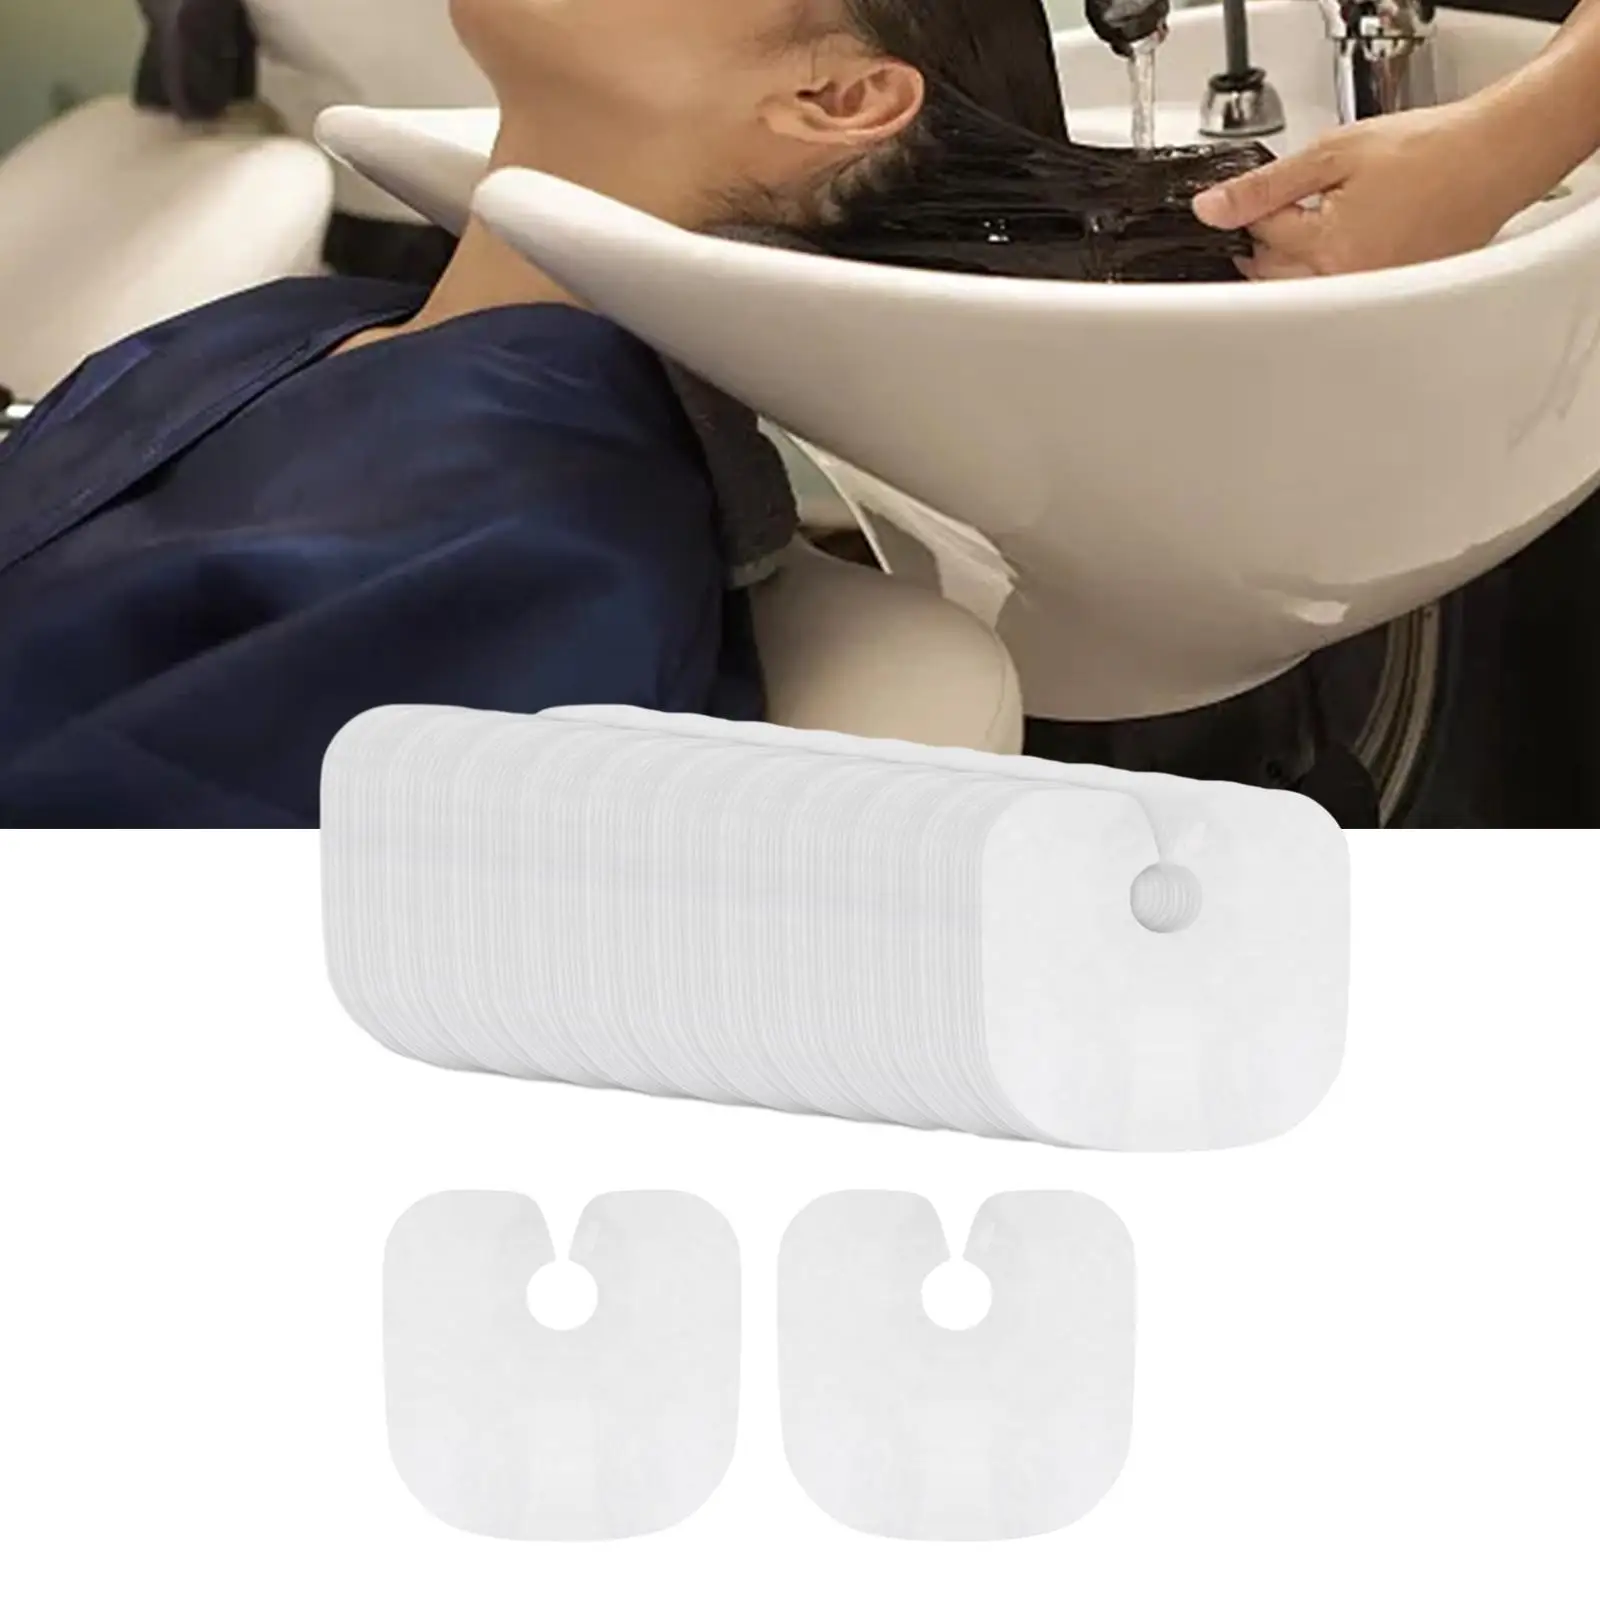 Disposable Salon Cape Disposable Hair Salon Capes for Barbershop Salon Chair